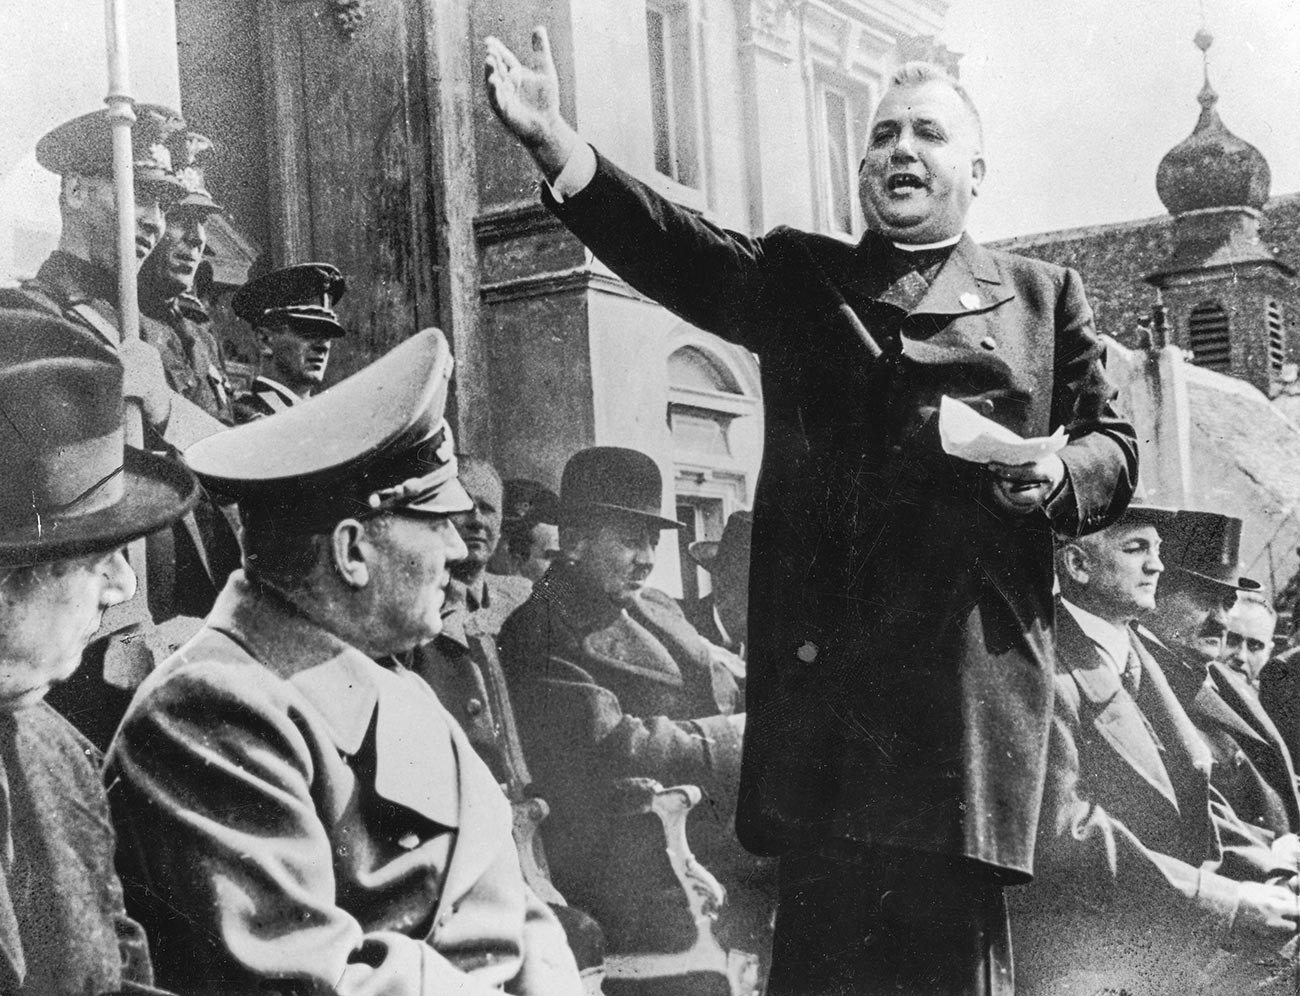 Le prêtre et leader politique slovaque Jozef Tiso (1887-1947) accueille les nazis dans la Slovaquie indépendante, 1939.